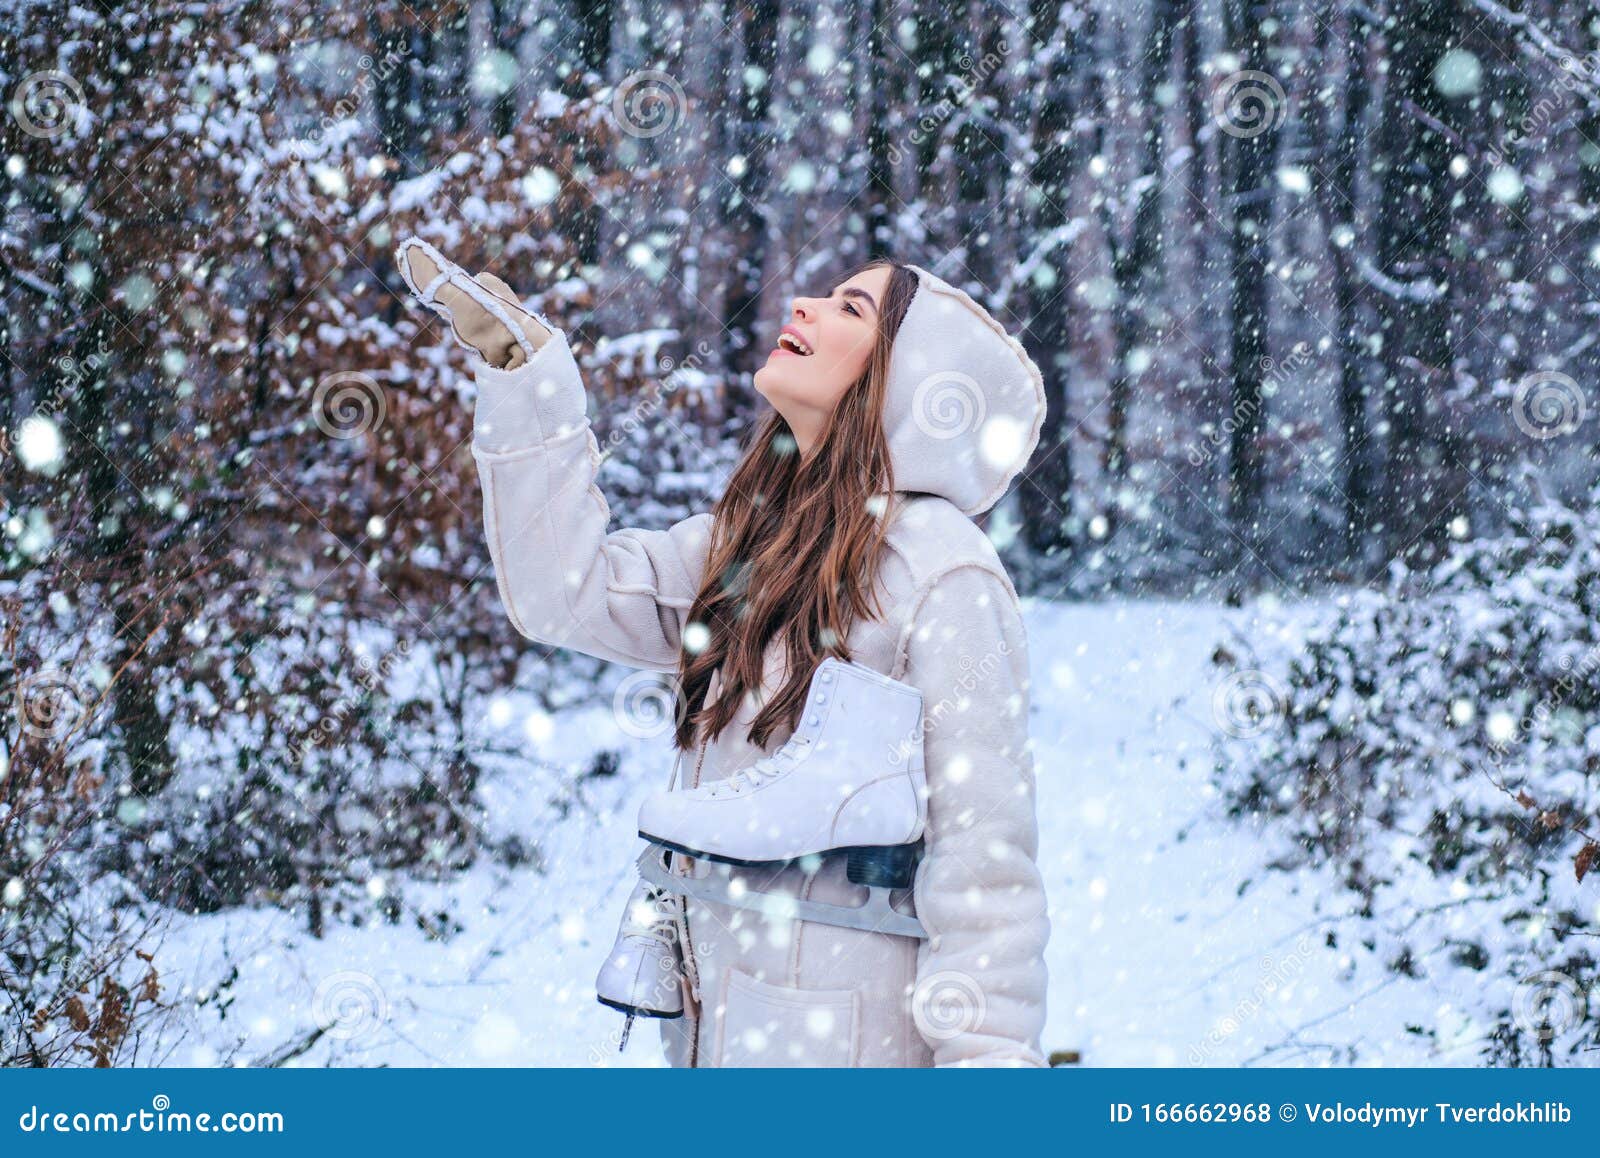 雪中女孩复古冬人冬季公园里玩的模特全局冷却冬季少女画像库存照片 图片包括有穿戴 具有